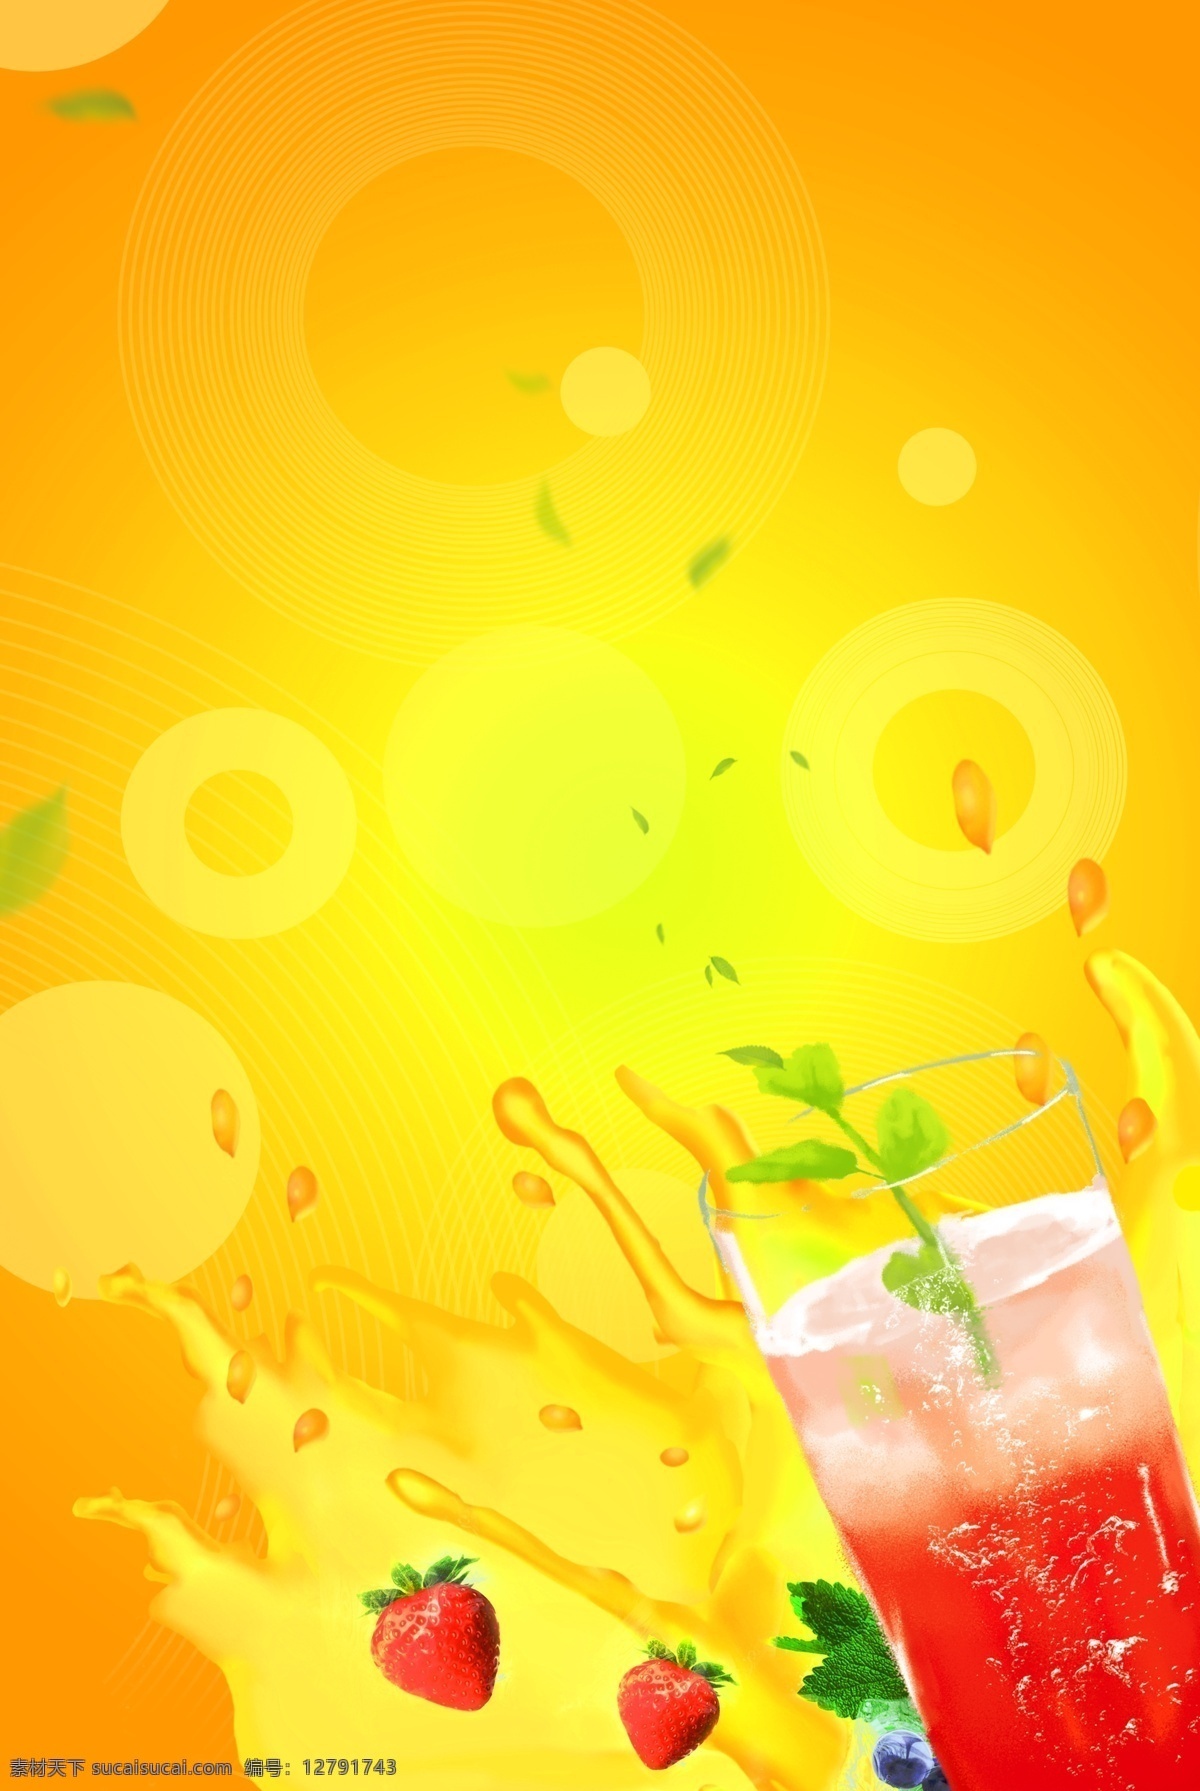 热带水果 混合 果汁 夏天 夏季 冰镇 饮料 草莓 芒果 橙子 黄色 橙色 红色 飞溅 薄荷 美味